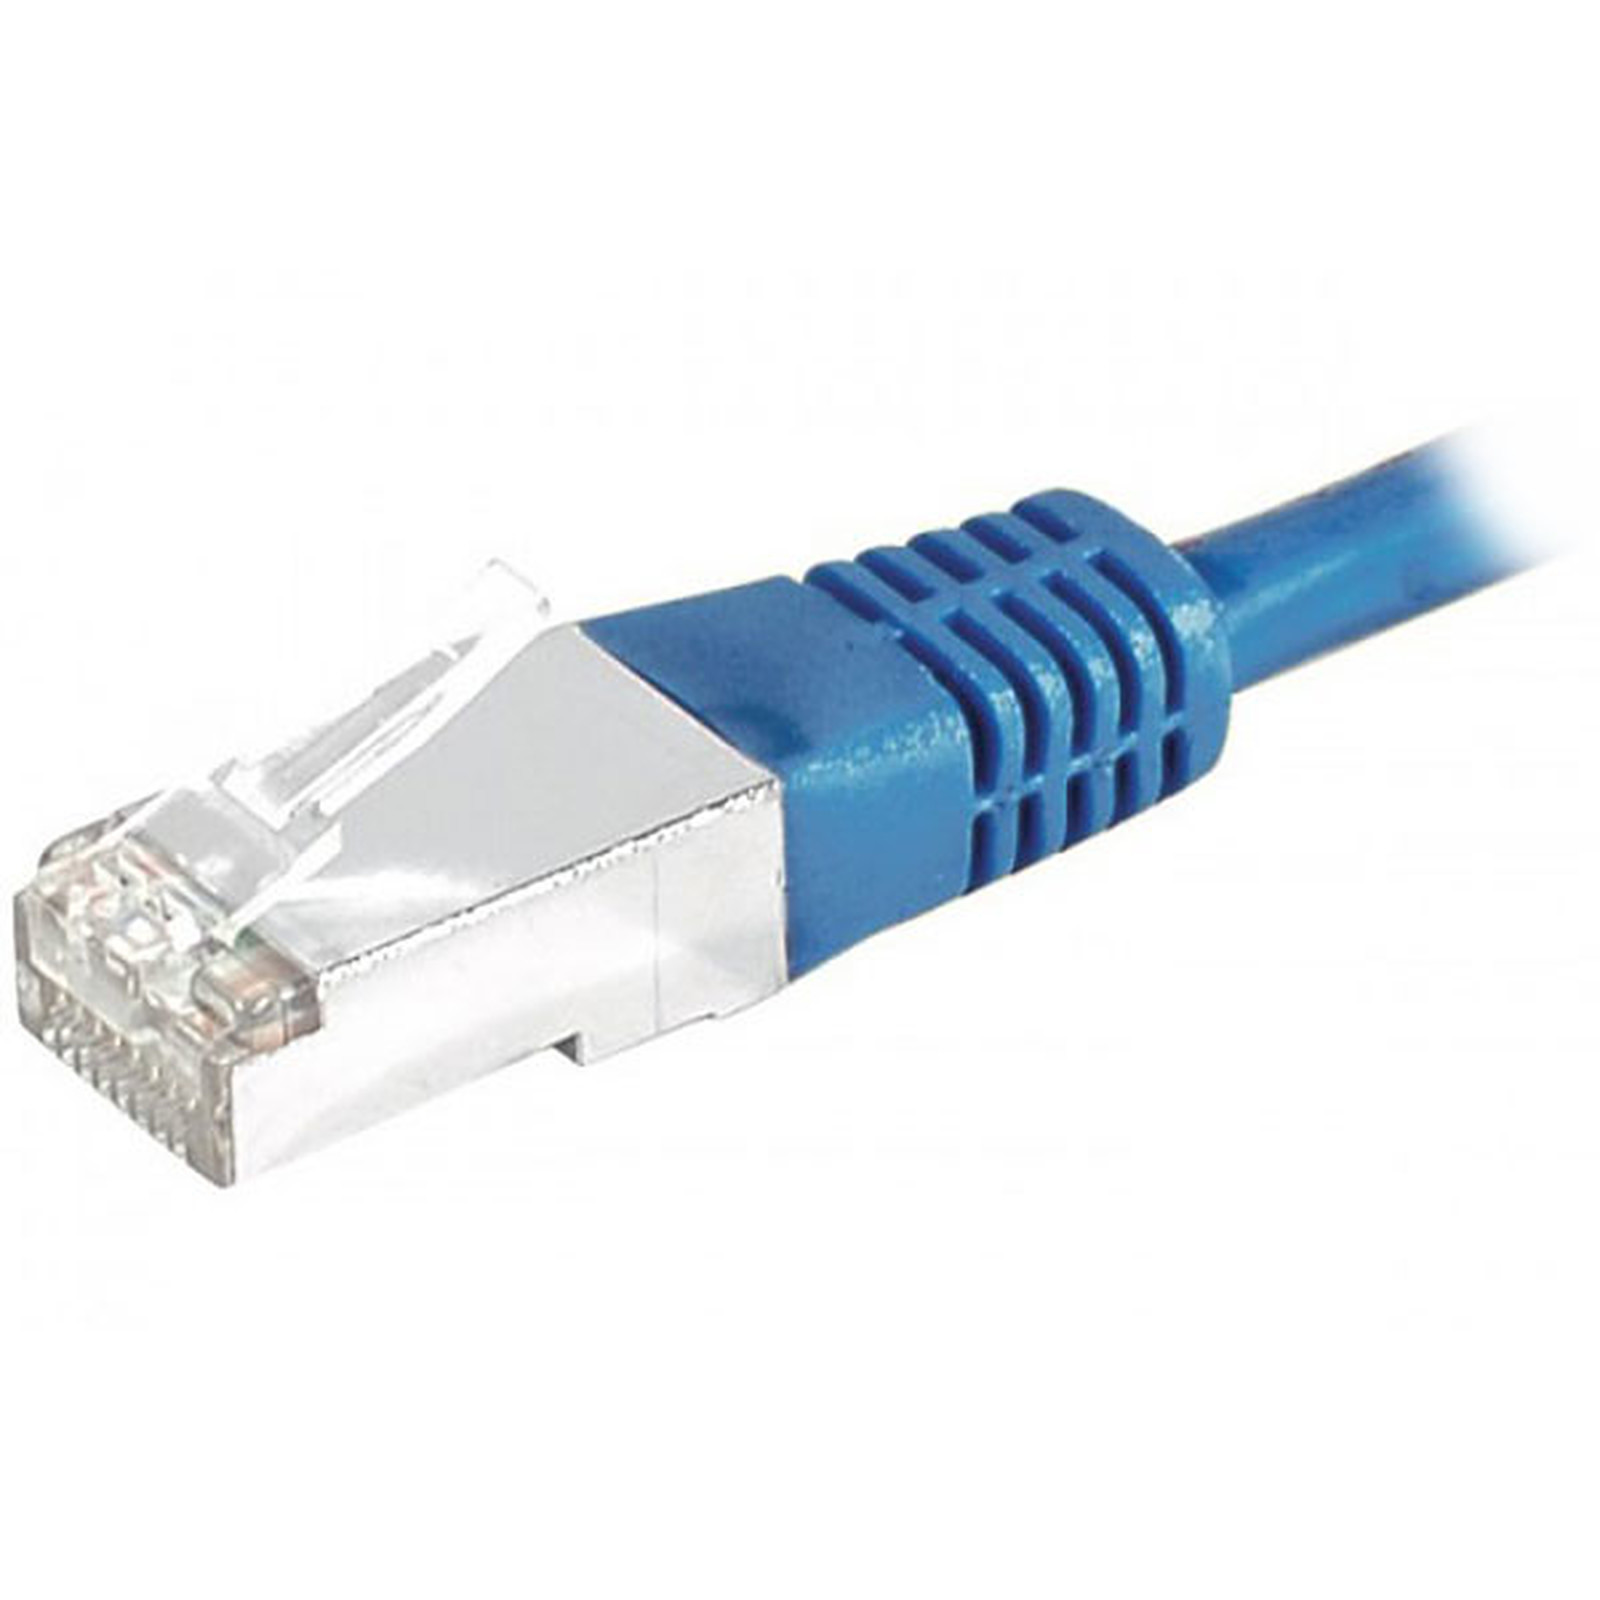 Cable RJ45 categorie 6 S/FTP 20 m (Bleu) - Cable RJ45 Generique